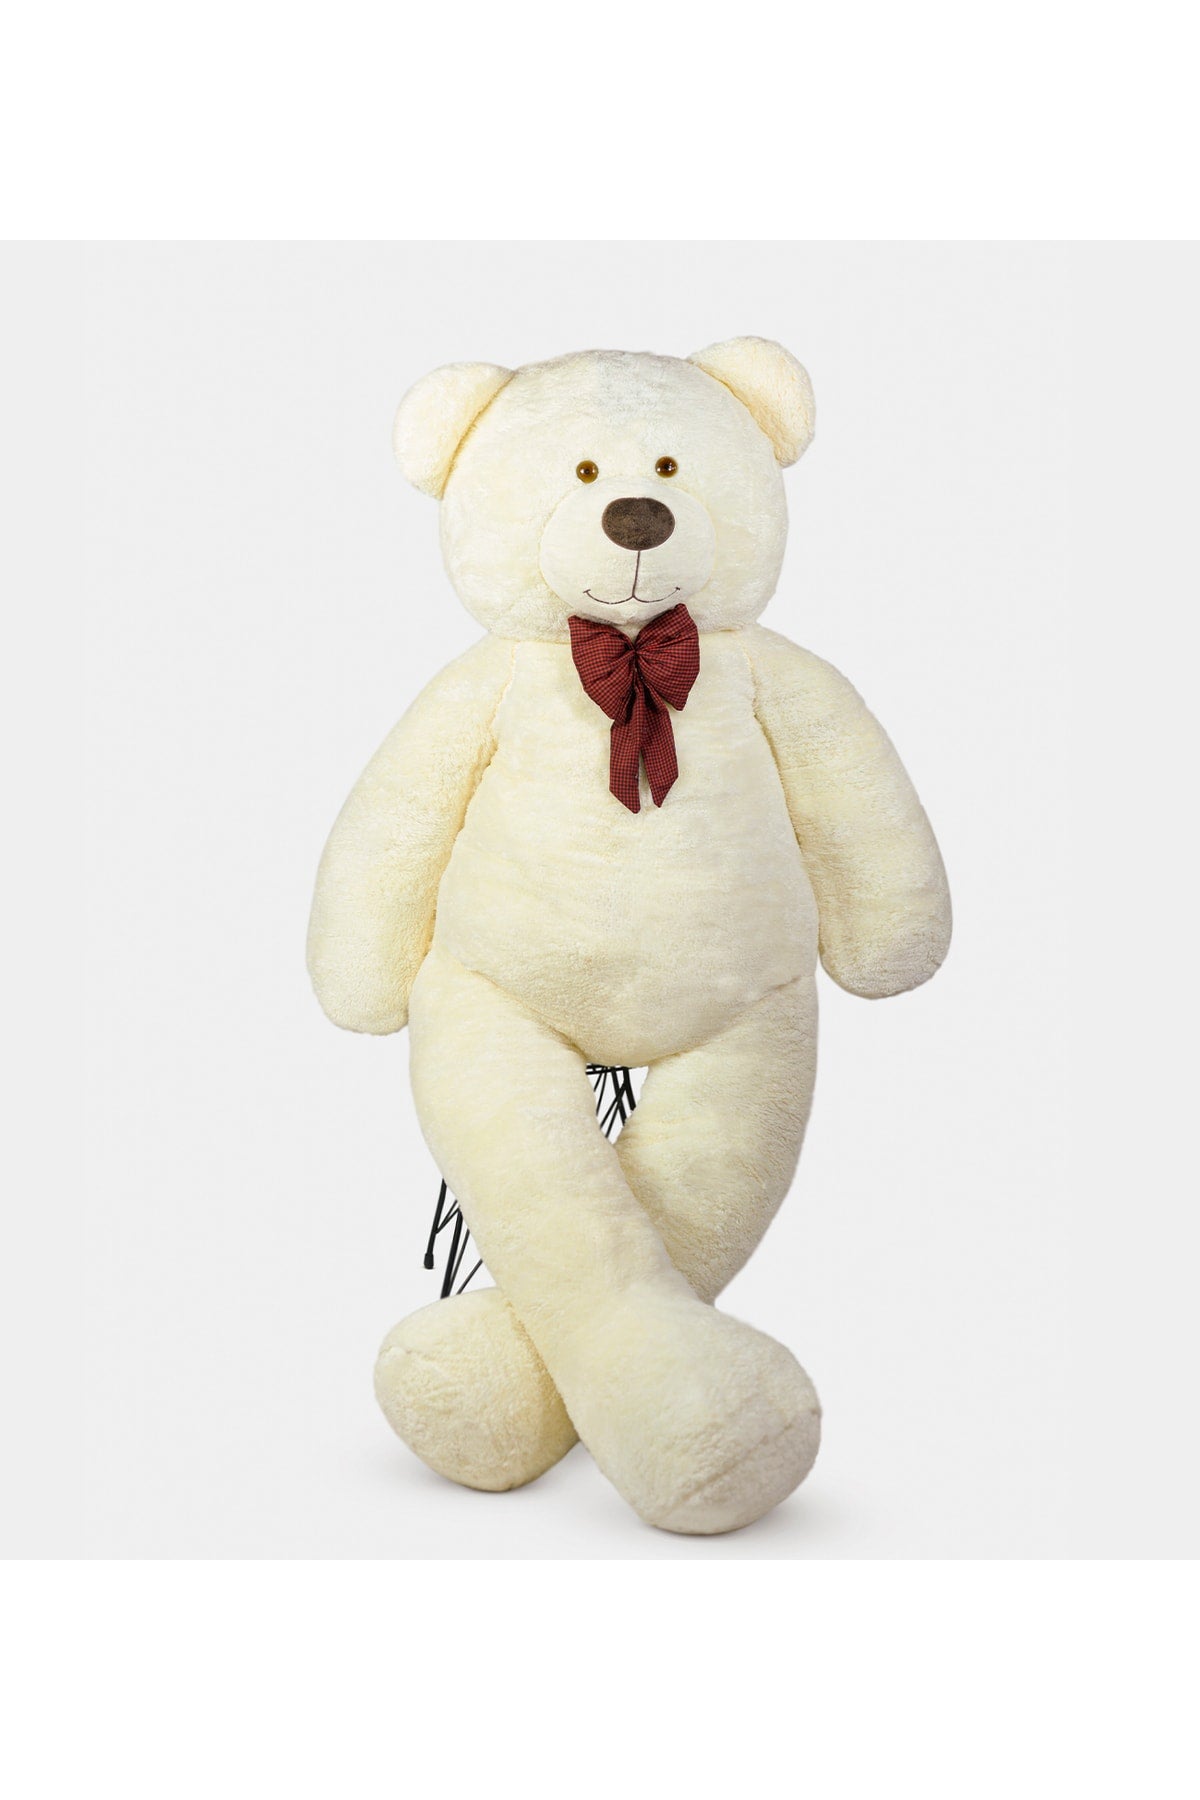 200 Cm Big Teddy Teddy Bear (100% Domestic)